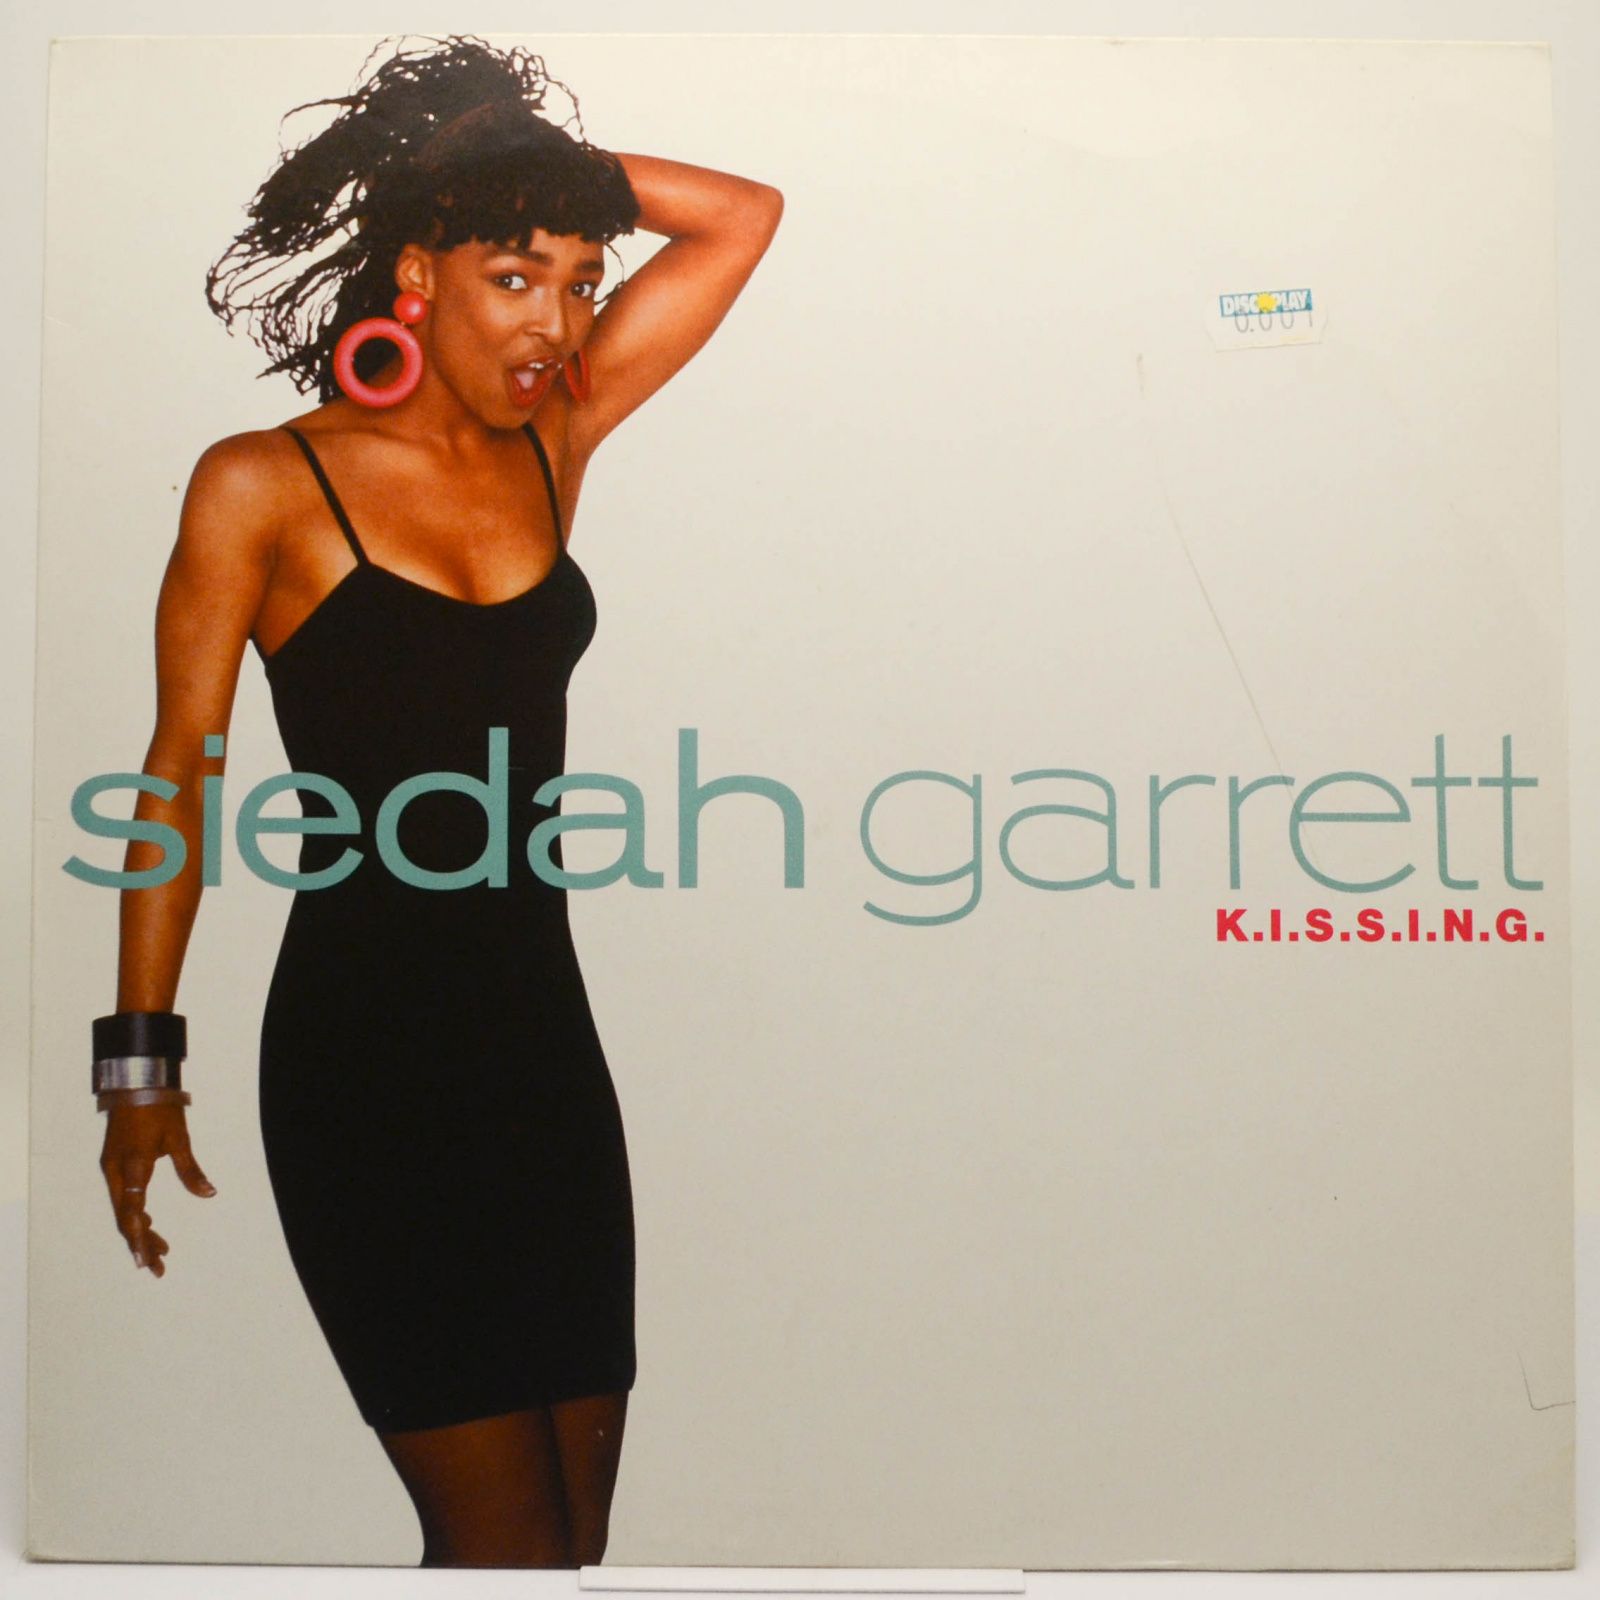 Siedah Garrett — K.I.S.S.I.N.G., 1988